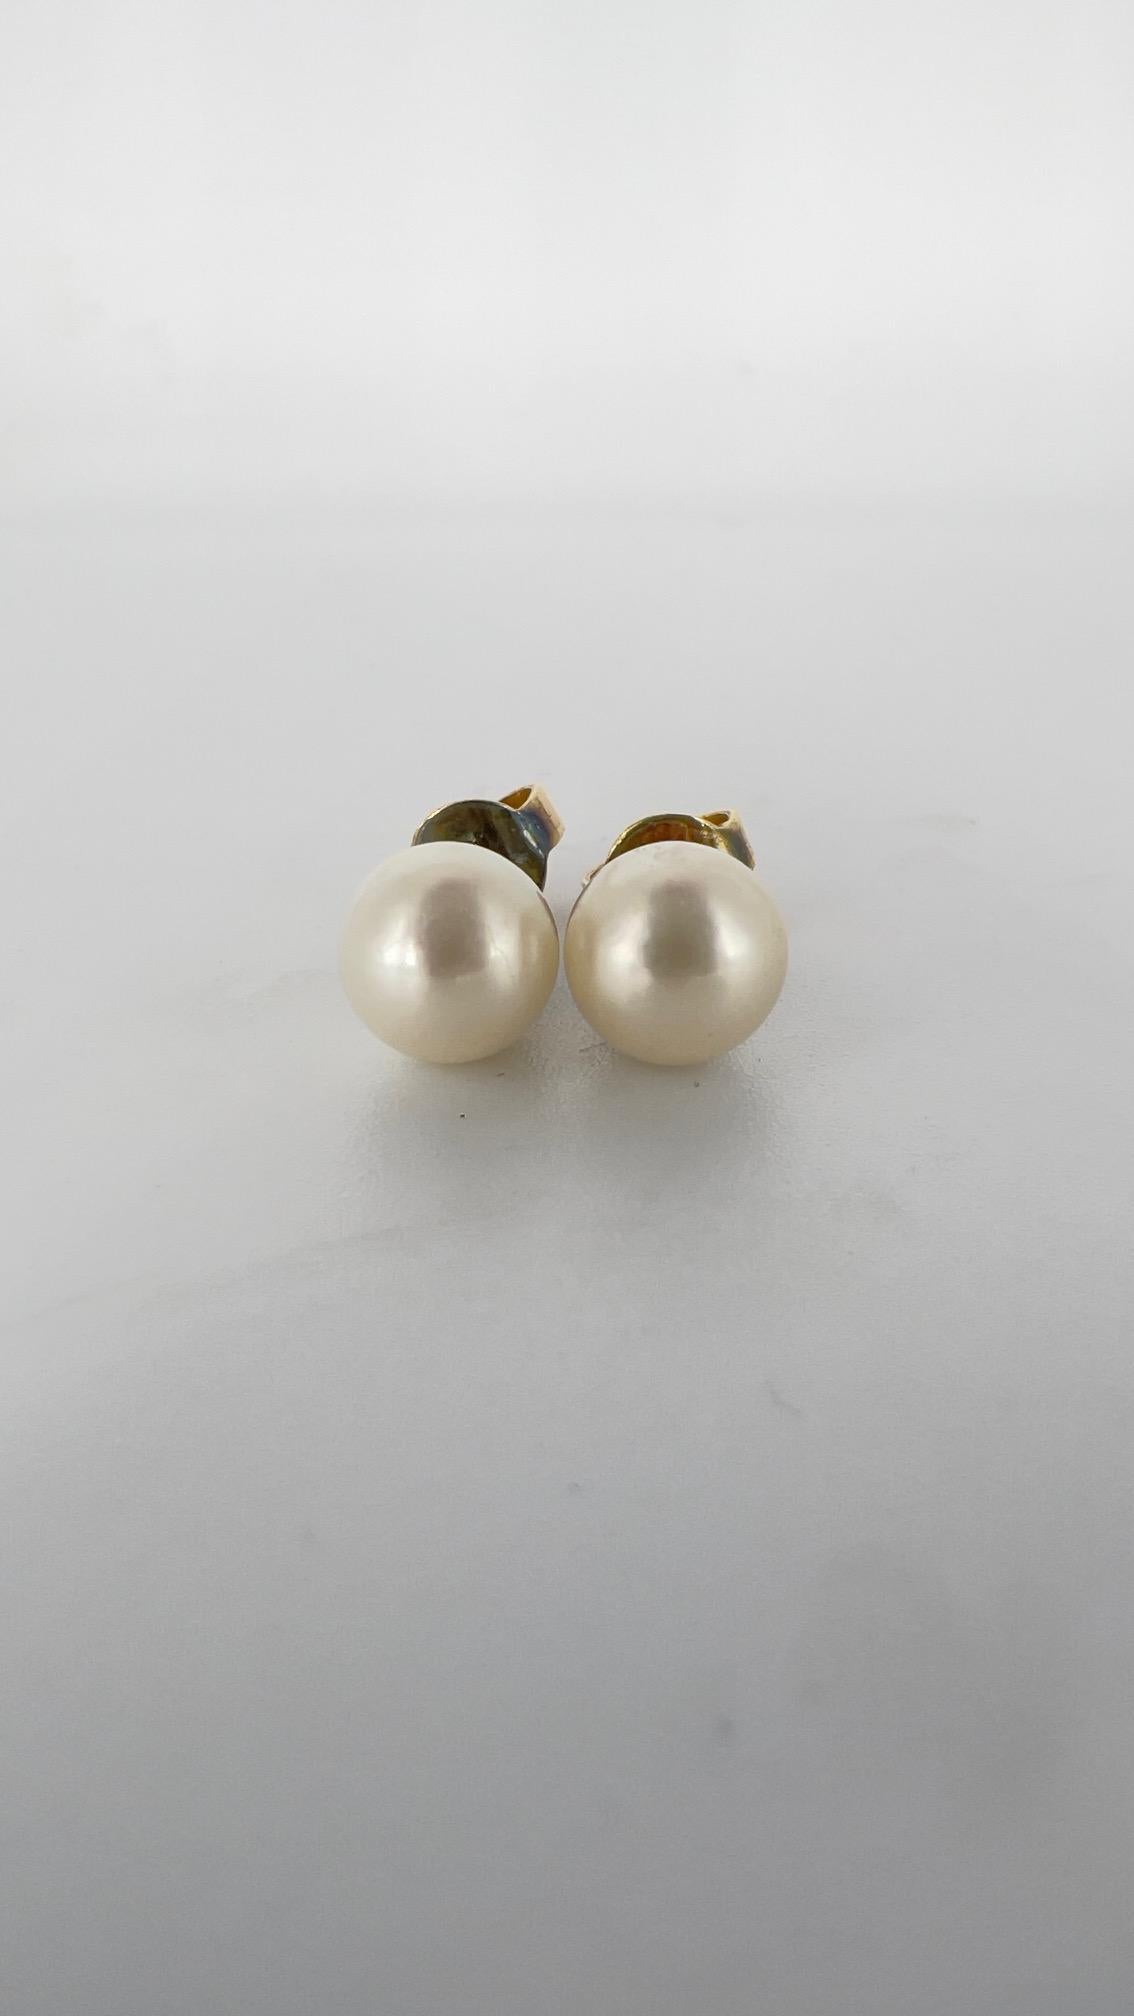 750 gold earrings